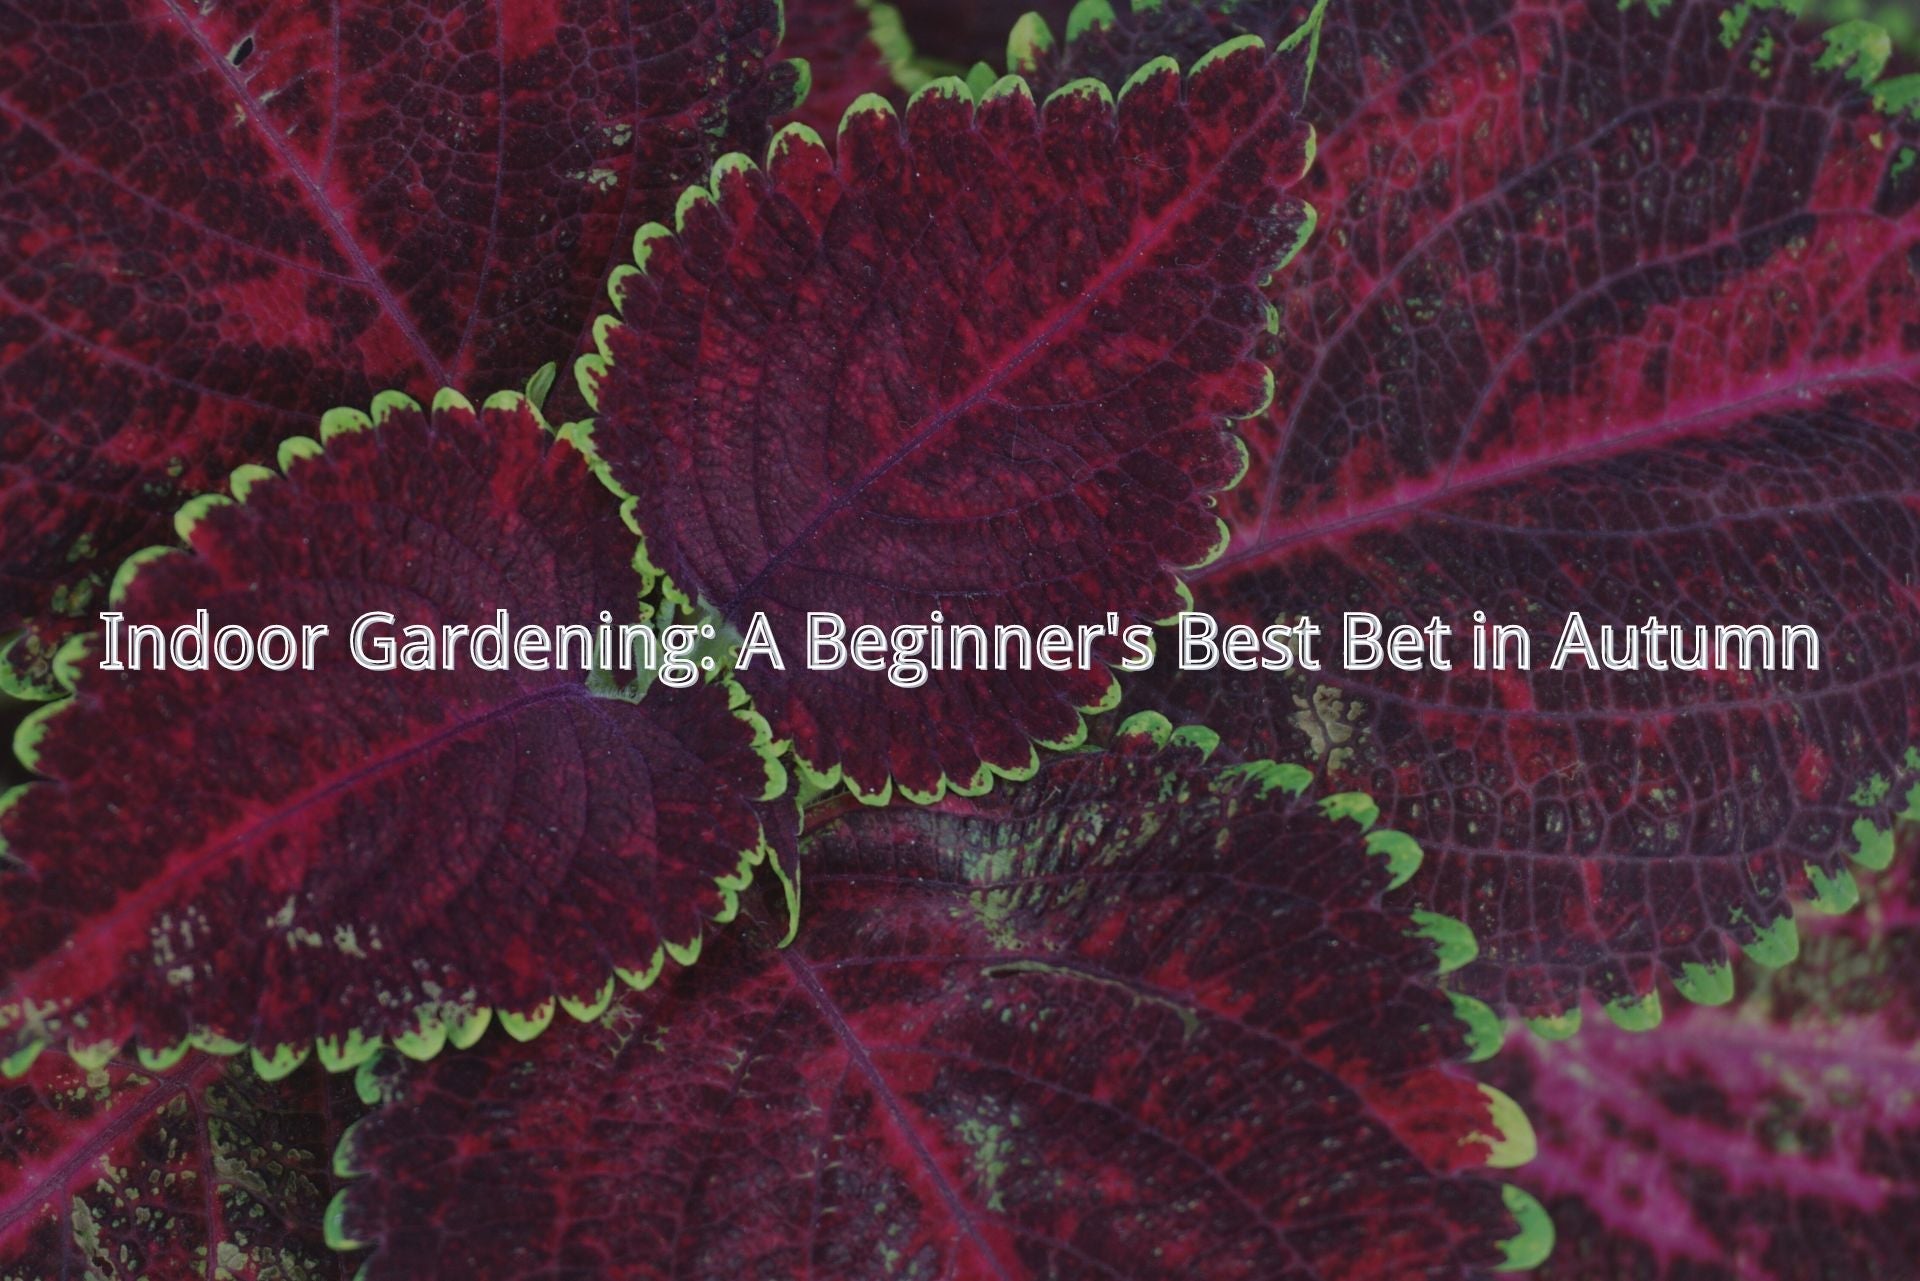 Indoor Gardening: A Beginner's Best Bet in Autumn